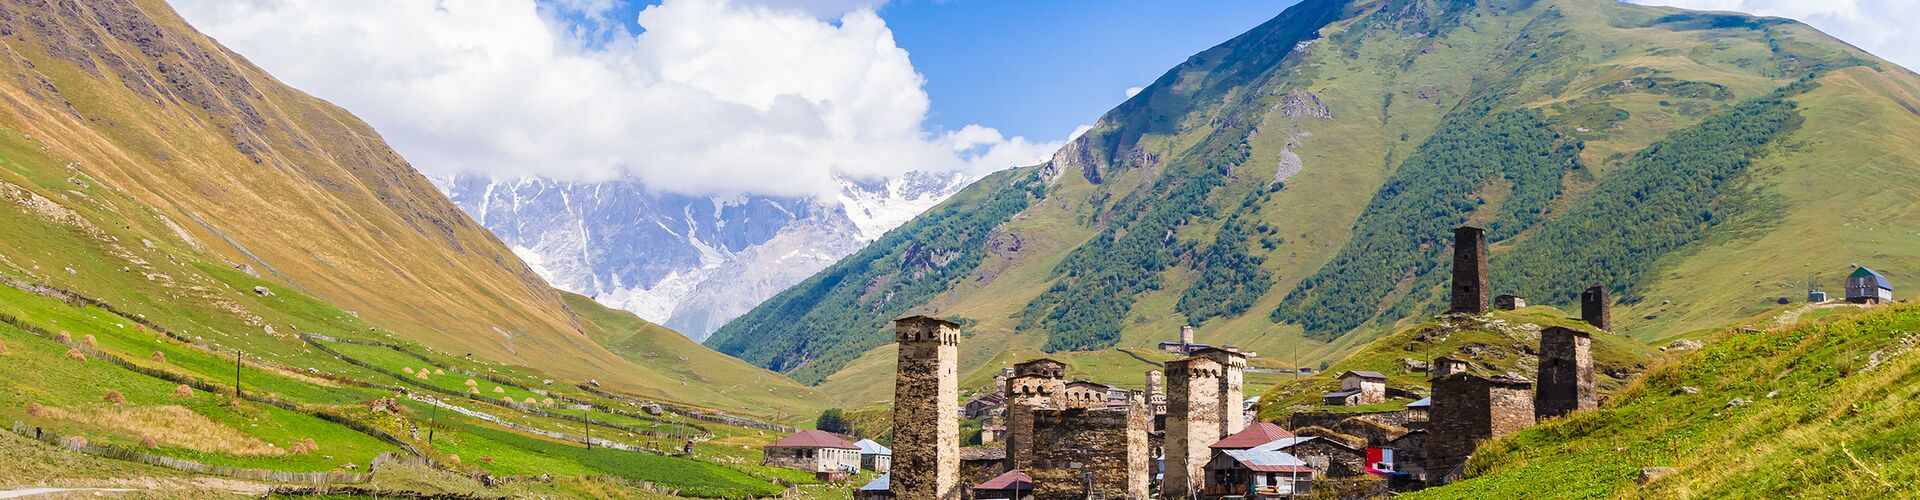 Ushguli in the Caucasus Mountains